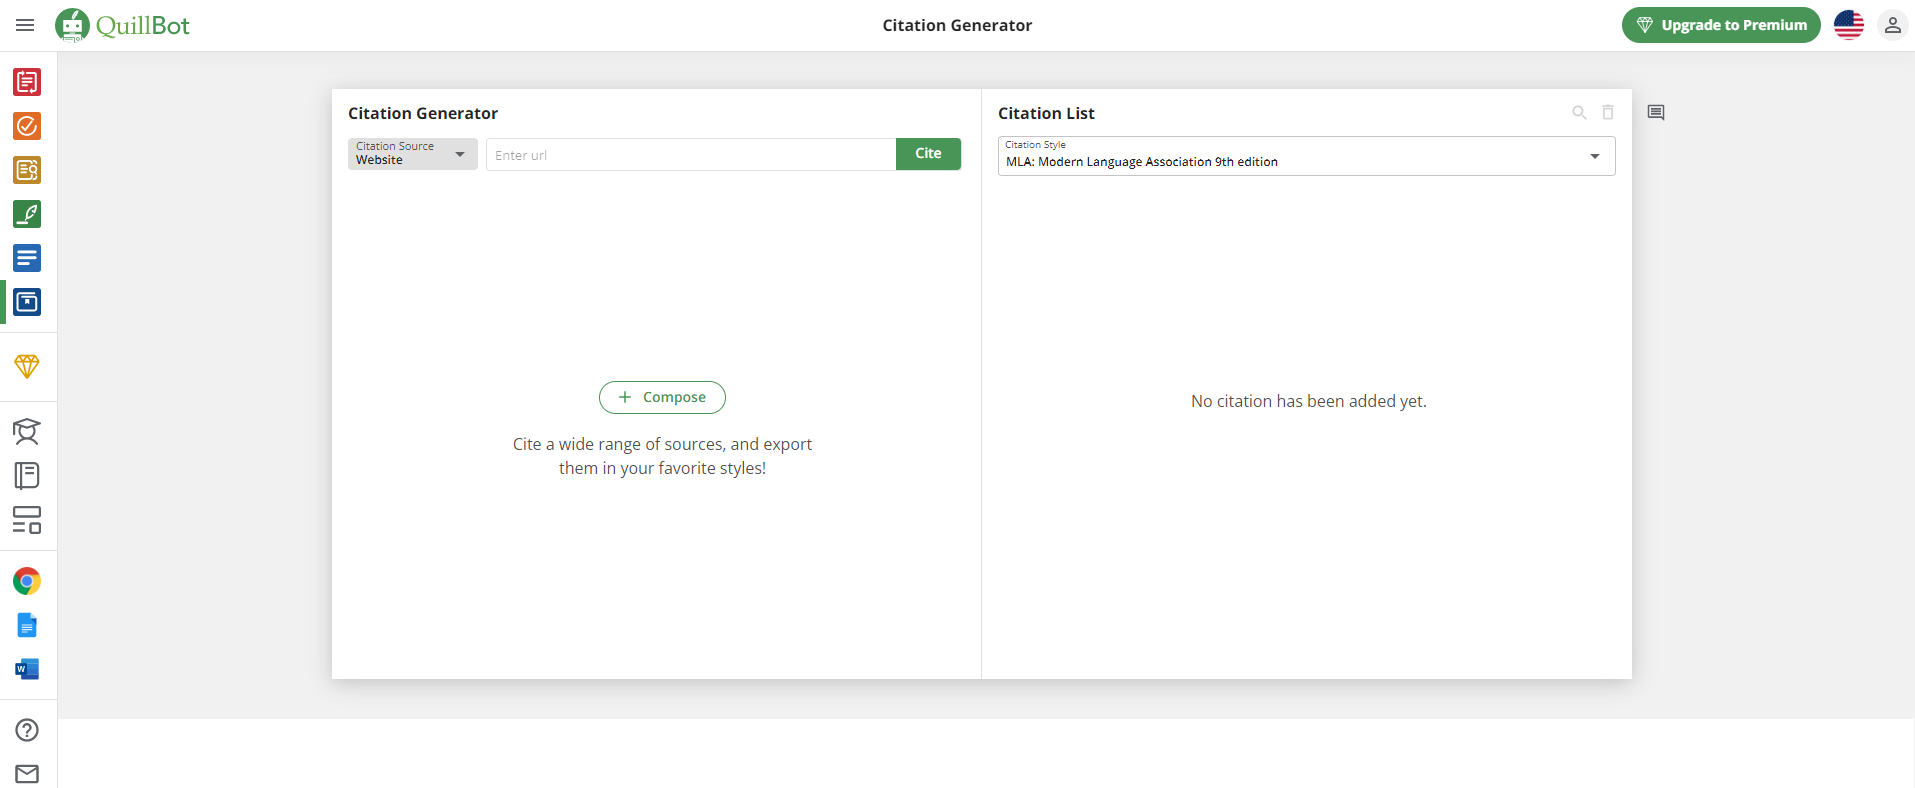 QuillBot Citation Generator Features